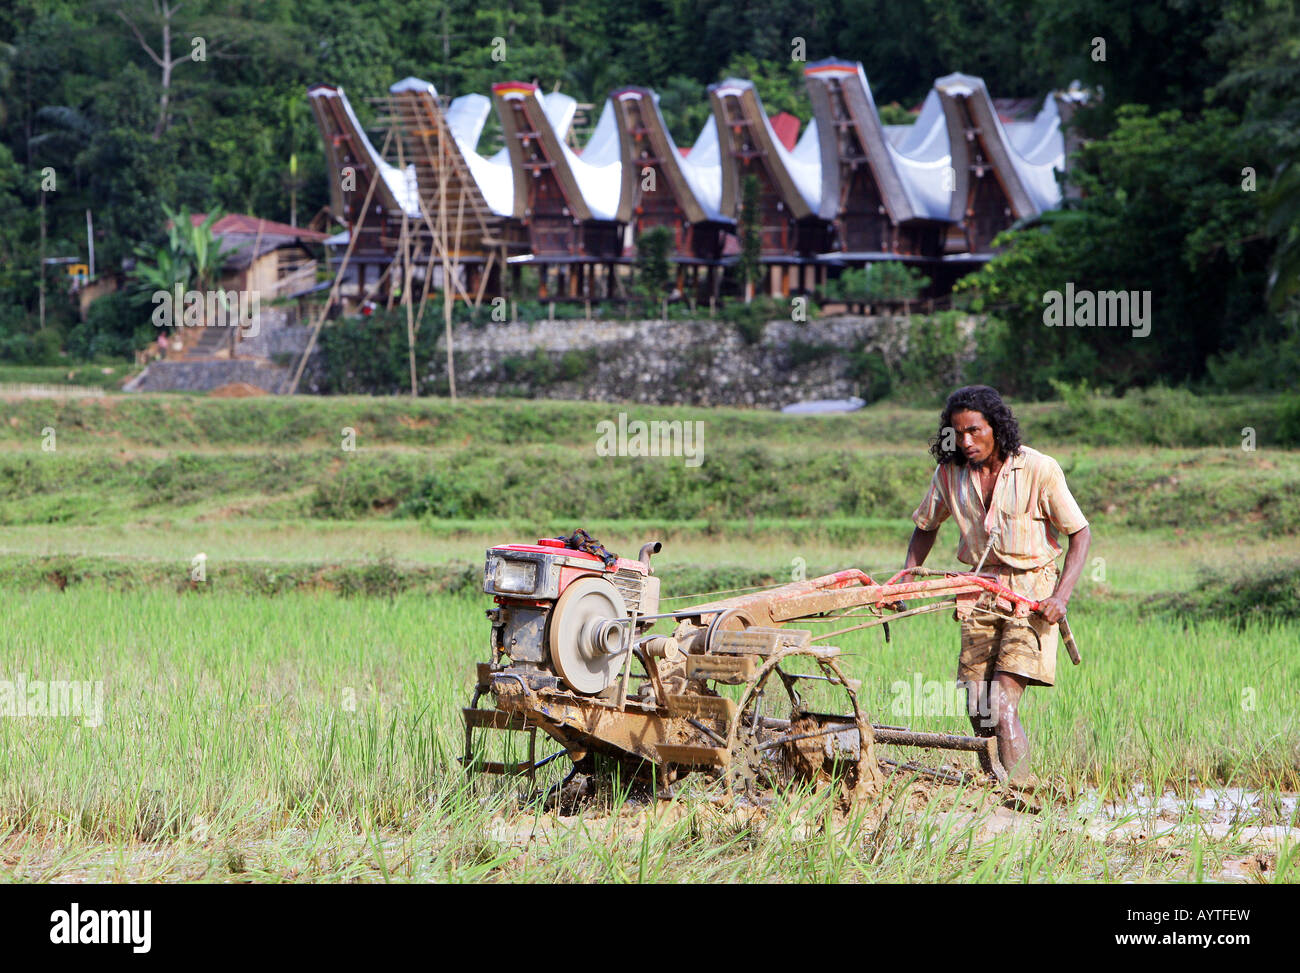 L'Indonésie, l'homme laboure champ de riz avec un tracteur, près de l'île de Sulawesi Rantepao Banque D'Images